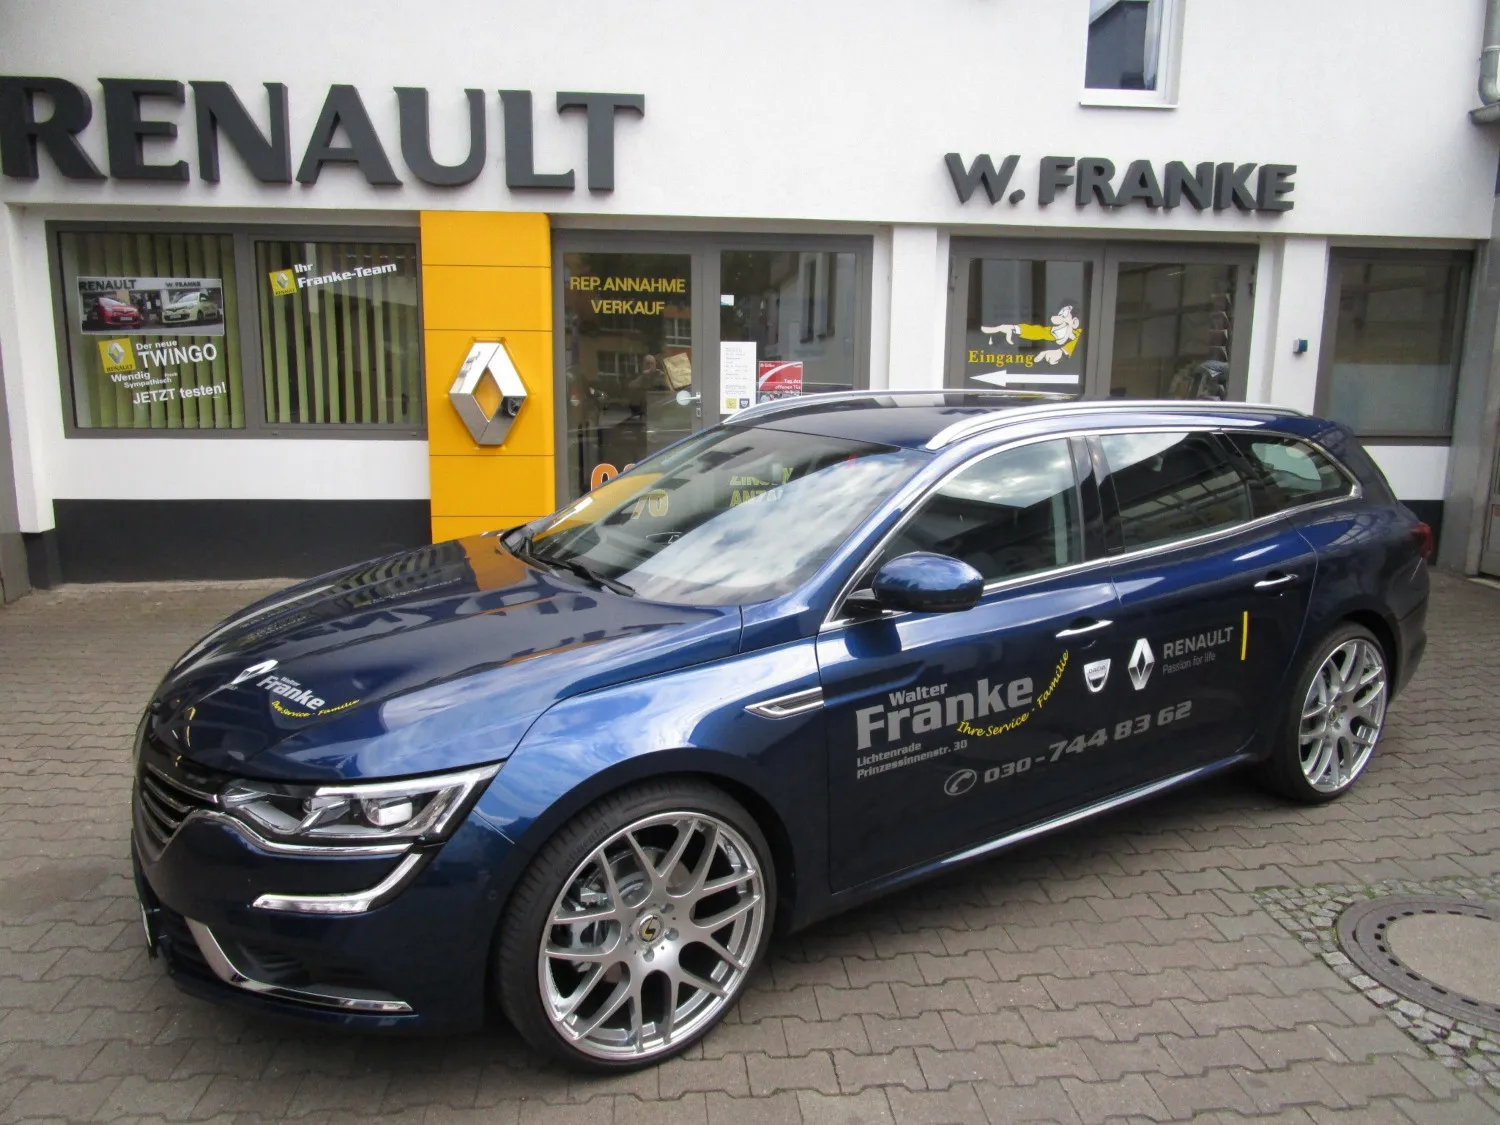 W.Franke GmbH&Co.KG